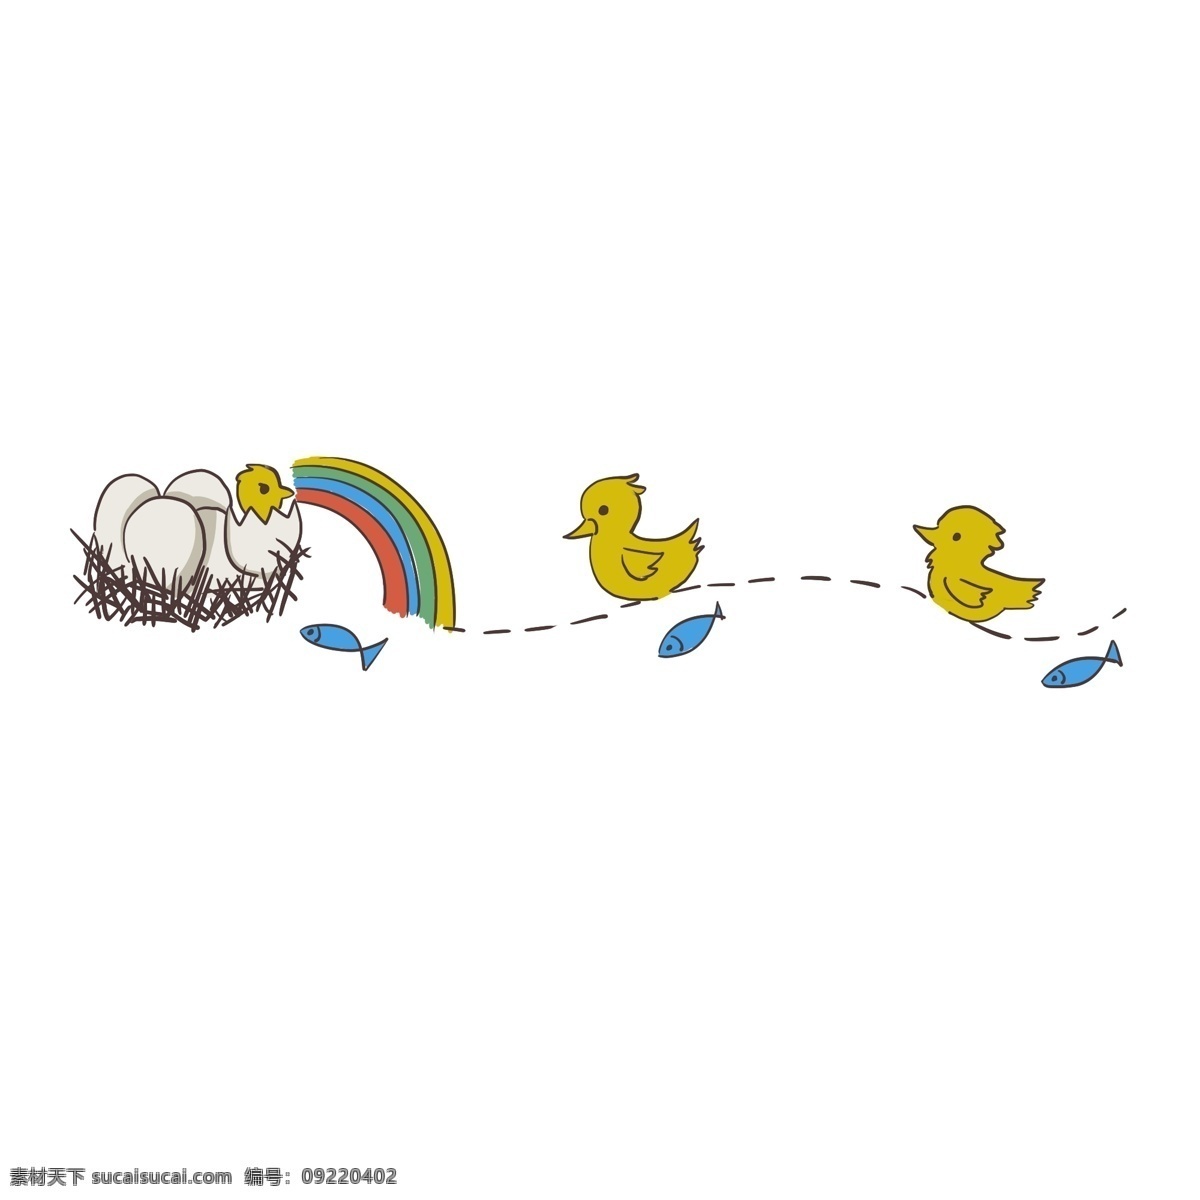 黄色 小鸭 分割线 插画 鸭子分割线 动物插画 卡通分割线 分割线插画 创意分割线 鸭子绘图